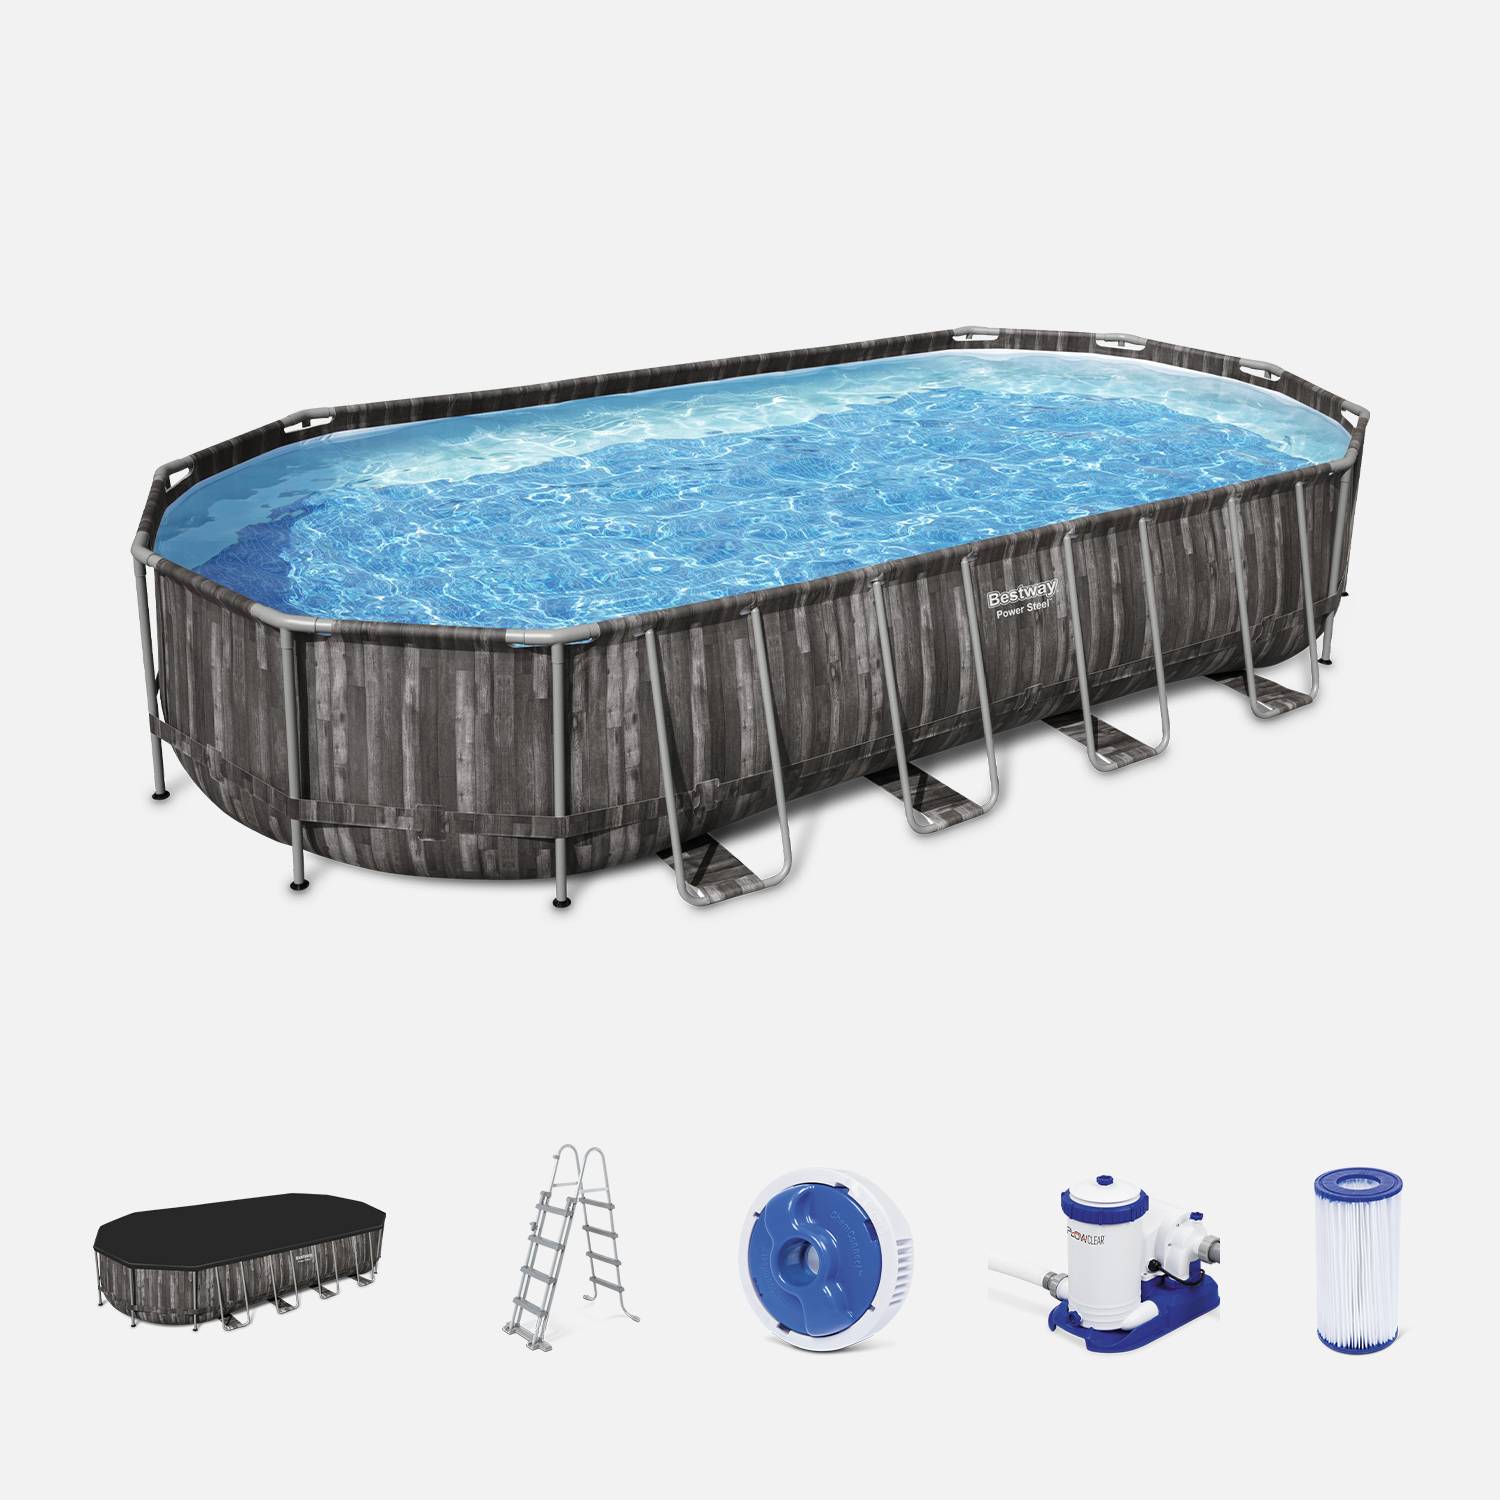 Kit piscine géante complet BESTWAY – Spinelle – piscine ovale tubulaire 7x3 m motif aspect bois, pompe de filtration, échelle, bâche de protection, diffuseur ChemConnect Photo1